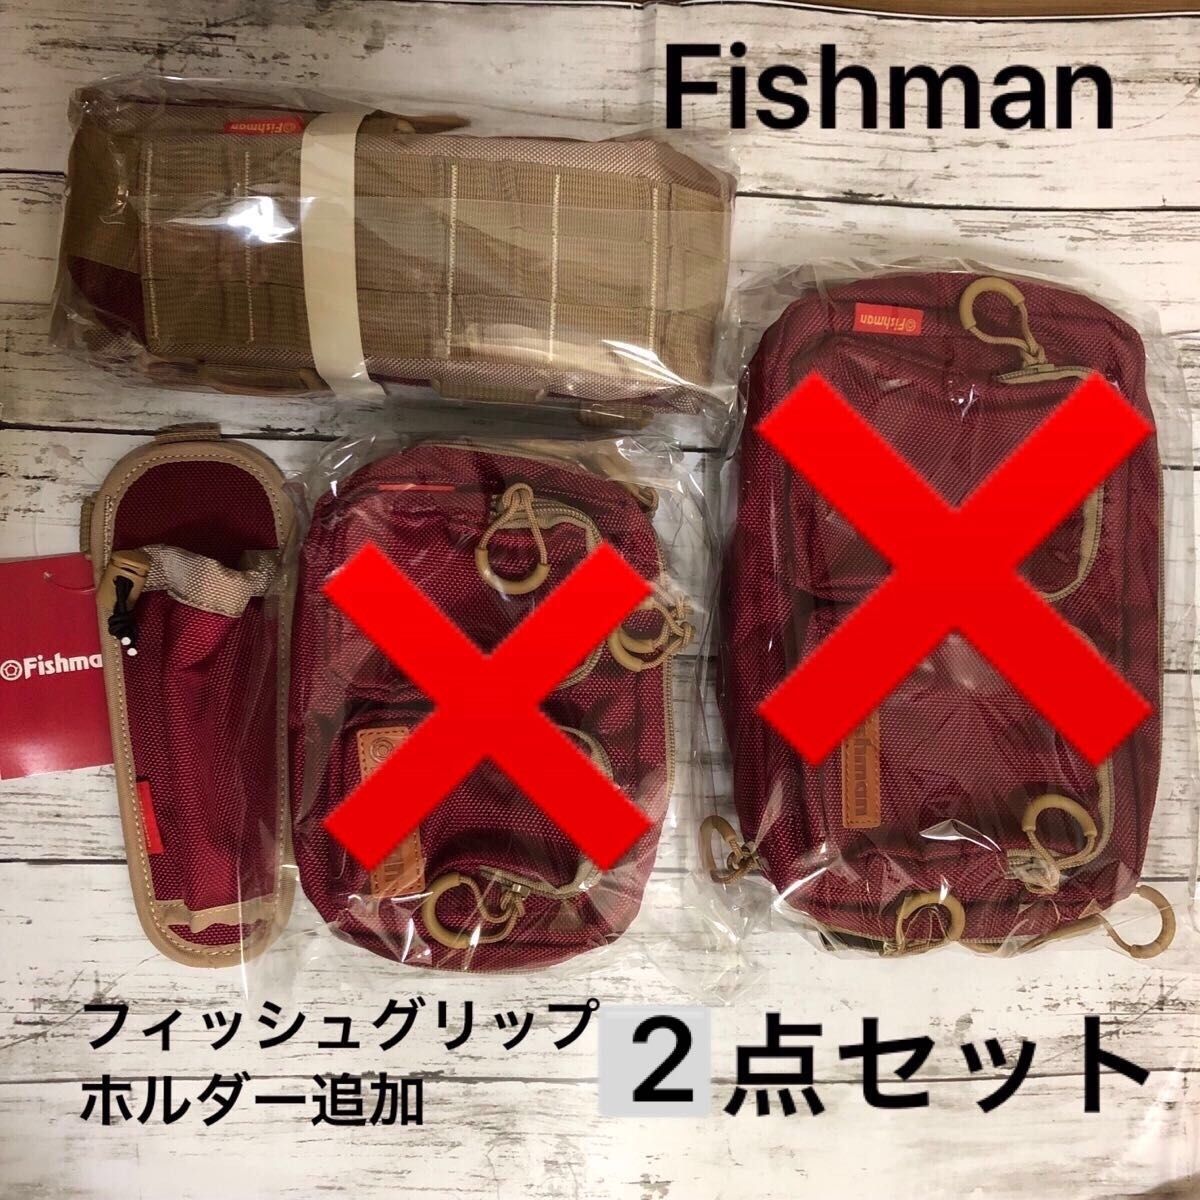 FISHMAN(フィッシュマン) システムベルト+フィッシュグリップホルダー= 2点セット